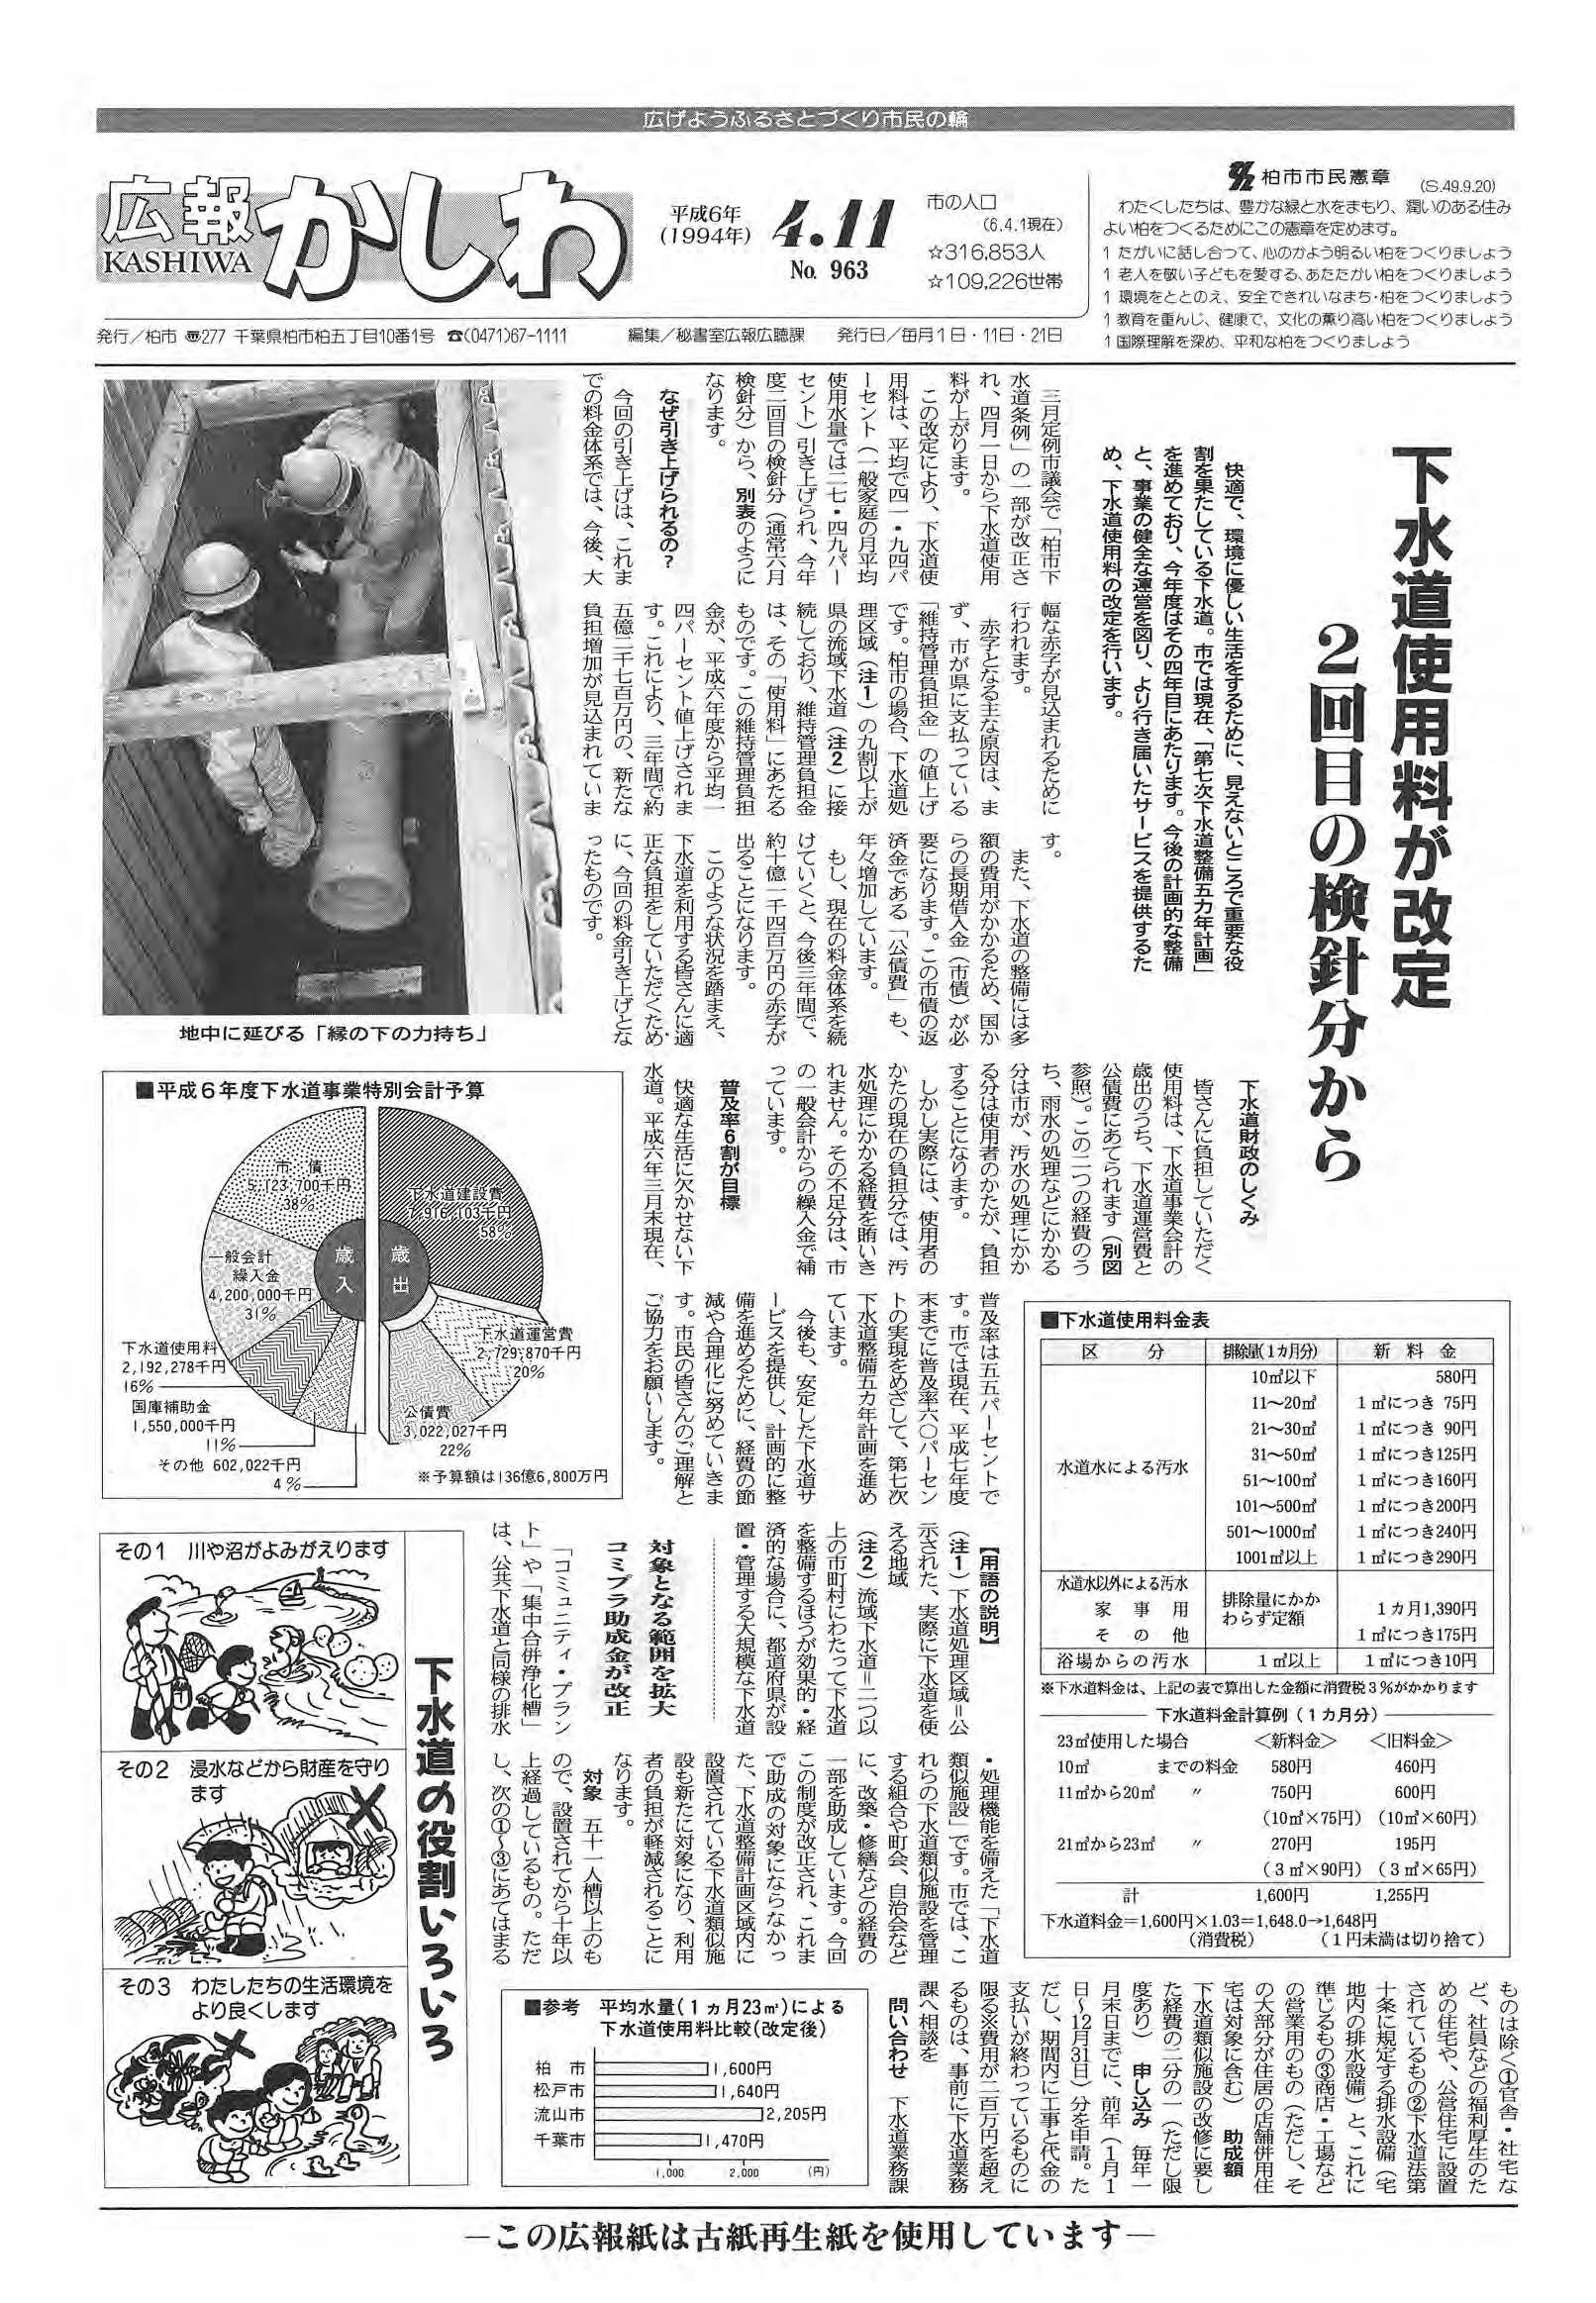 広報かしわ　平成6年4月11日発行　963号